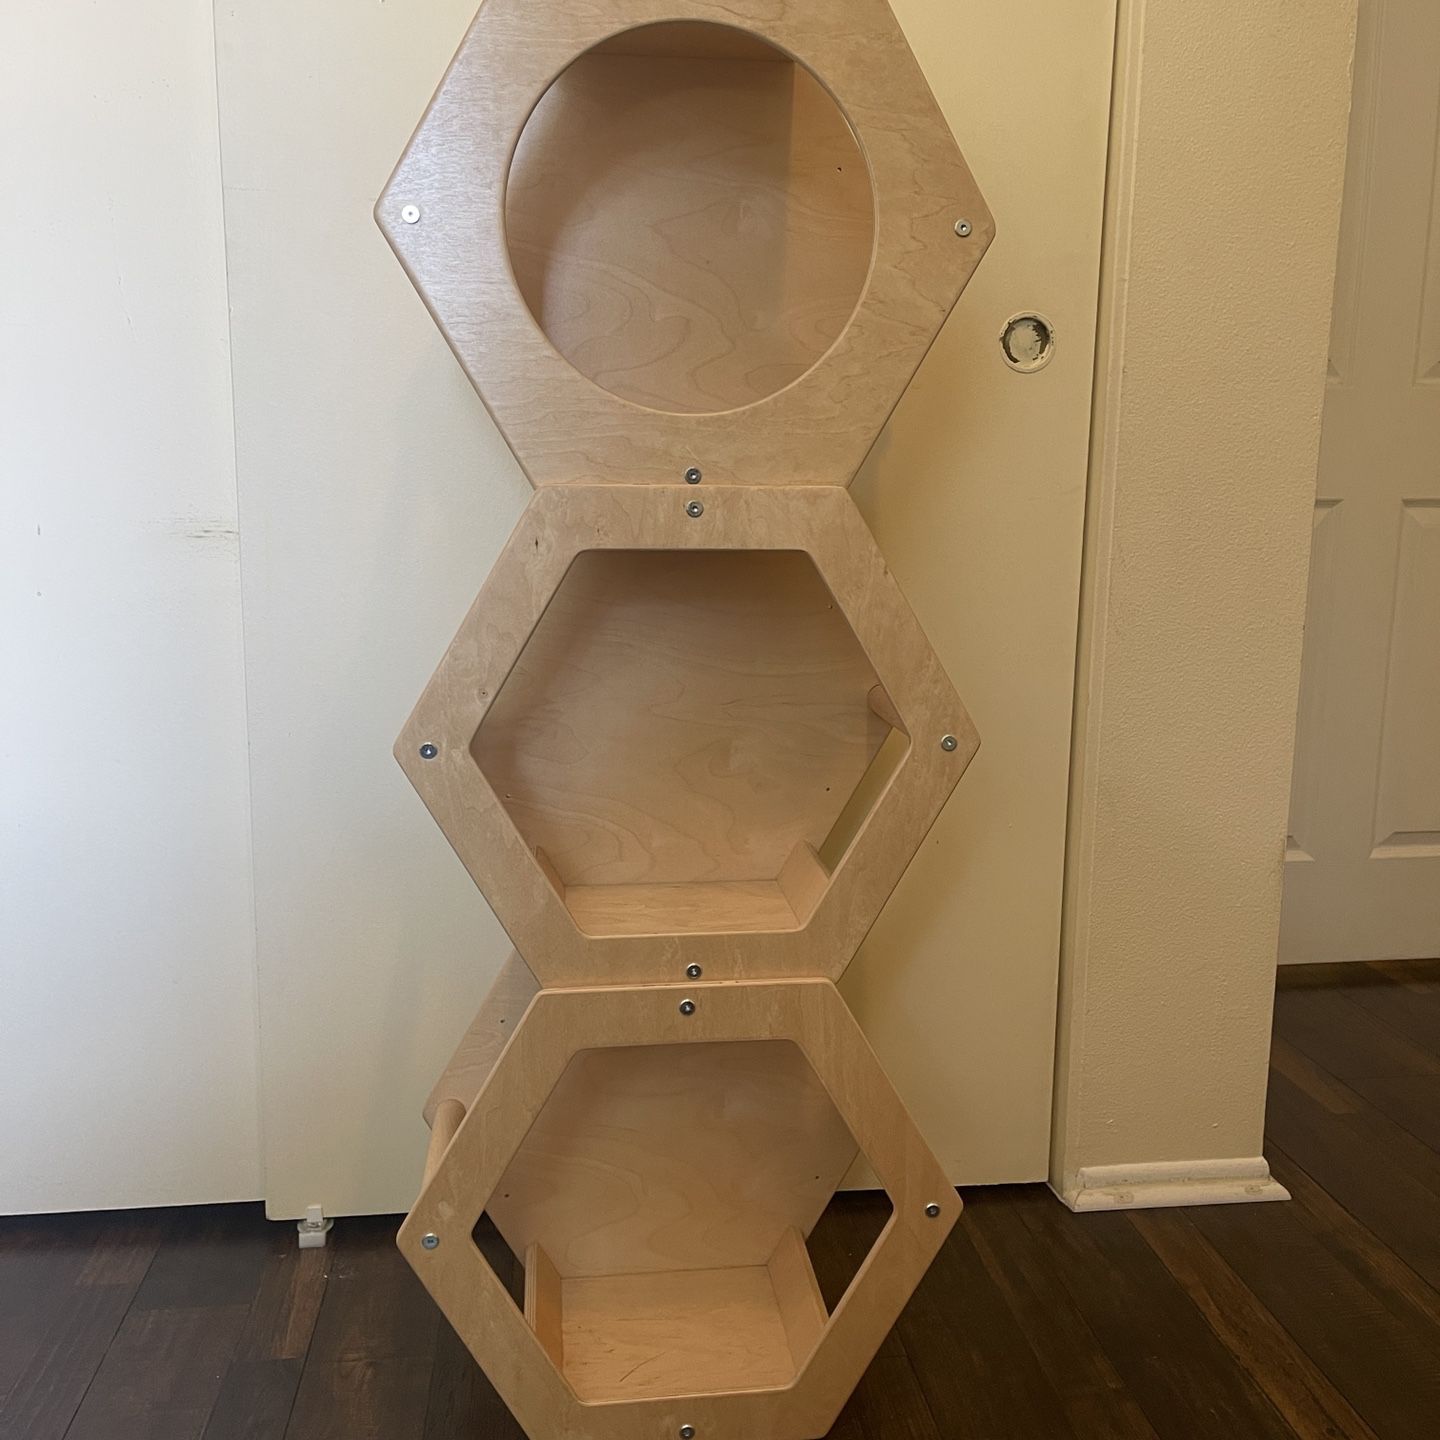 Hexagonal Cat Shelves (3) - make me an offer! pick up only